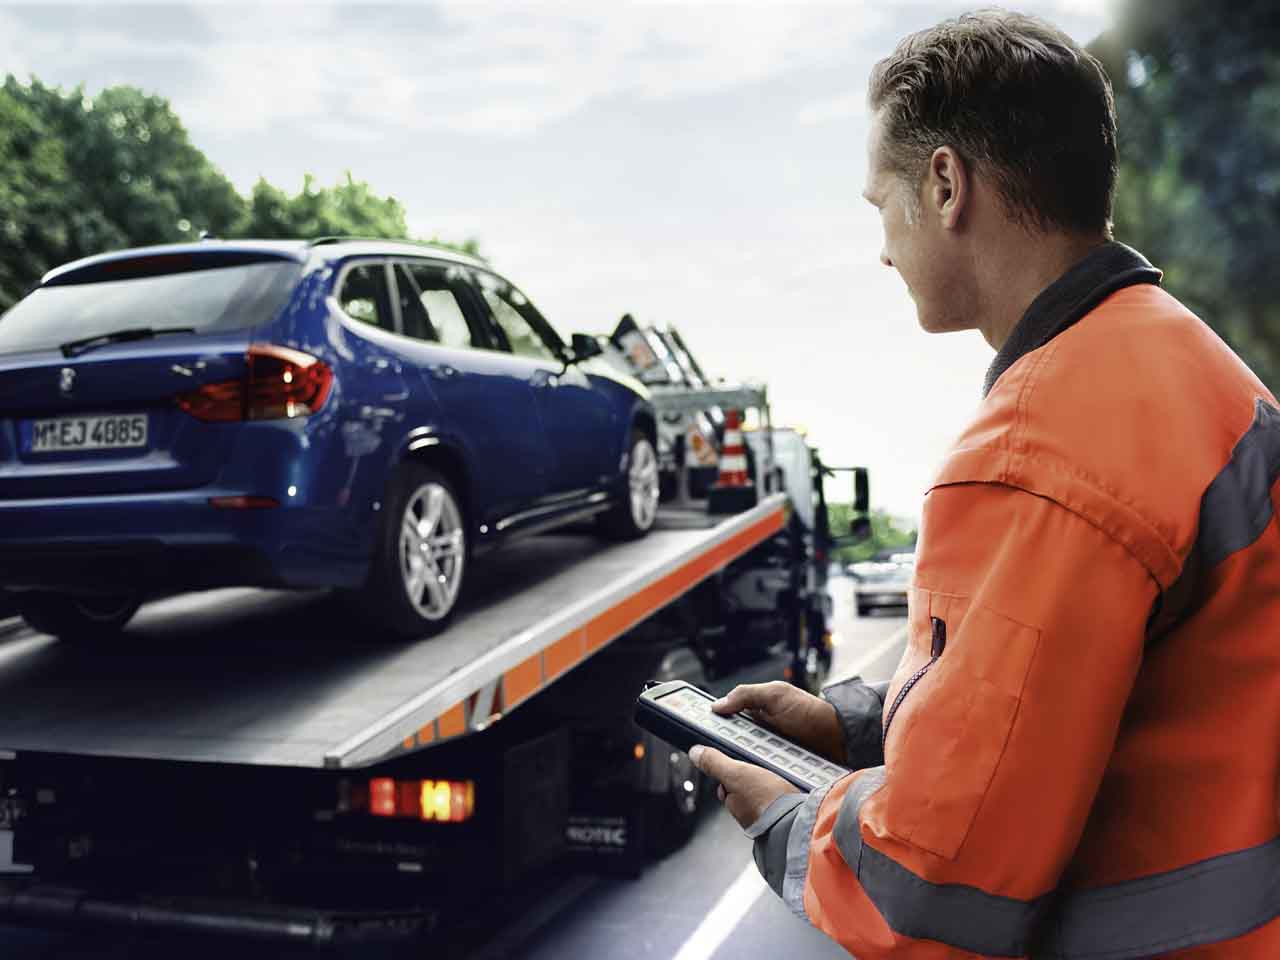 Khi cần, dịch vụ RSA hỗ trợ kéo xe về trung tâm dịch vụ ủy quyền BMW, MINI gần nhất.